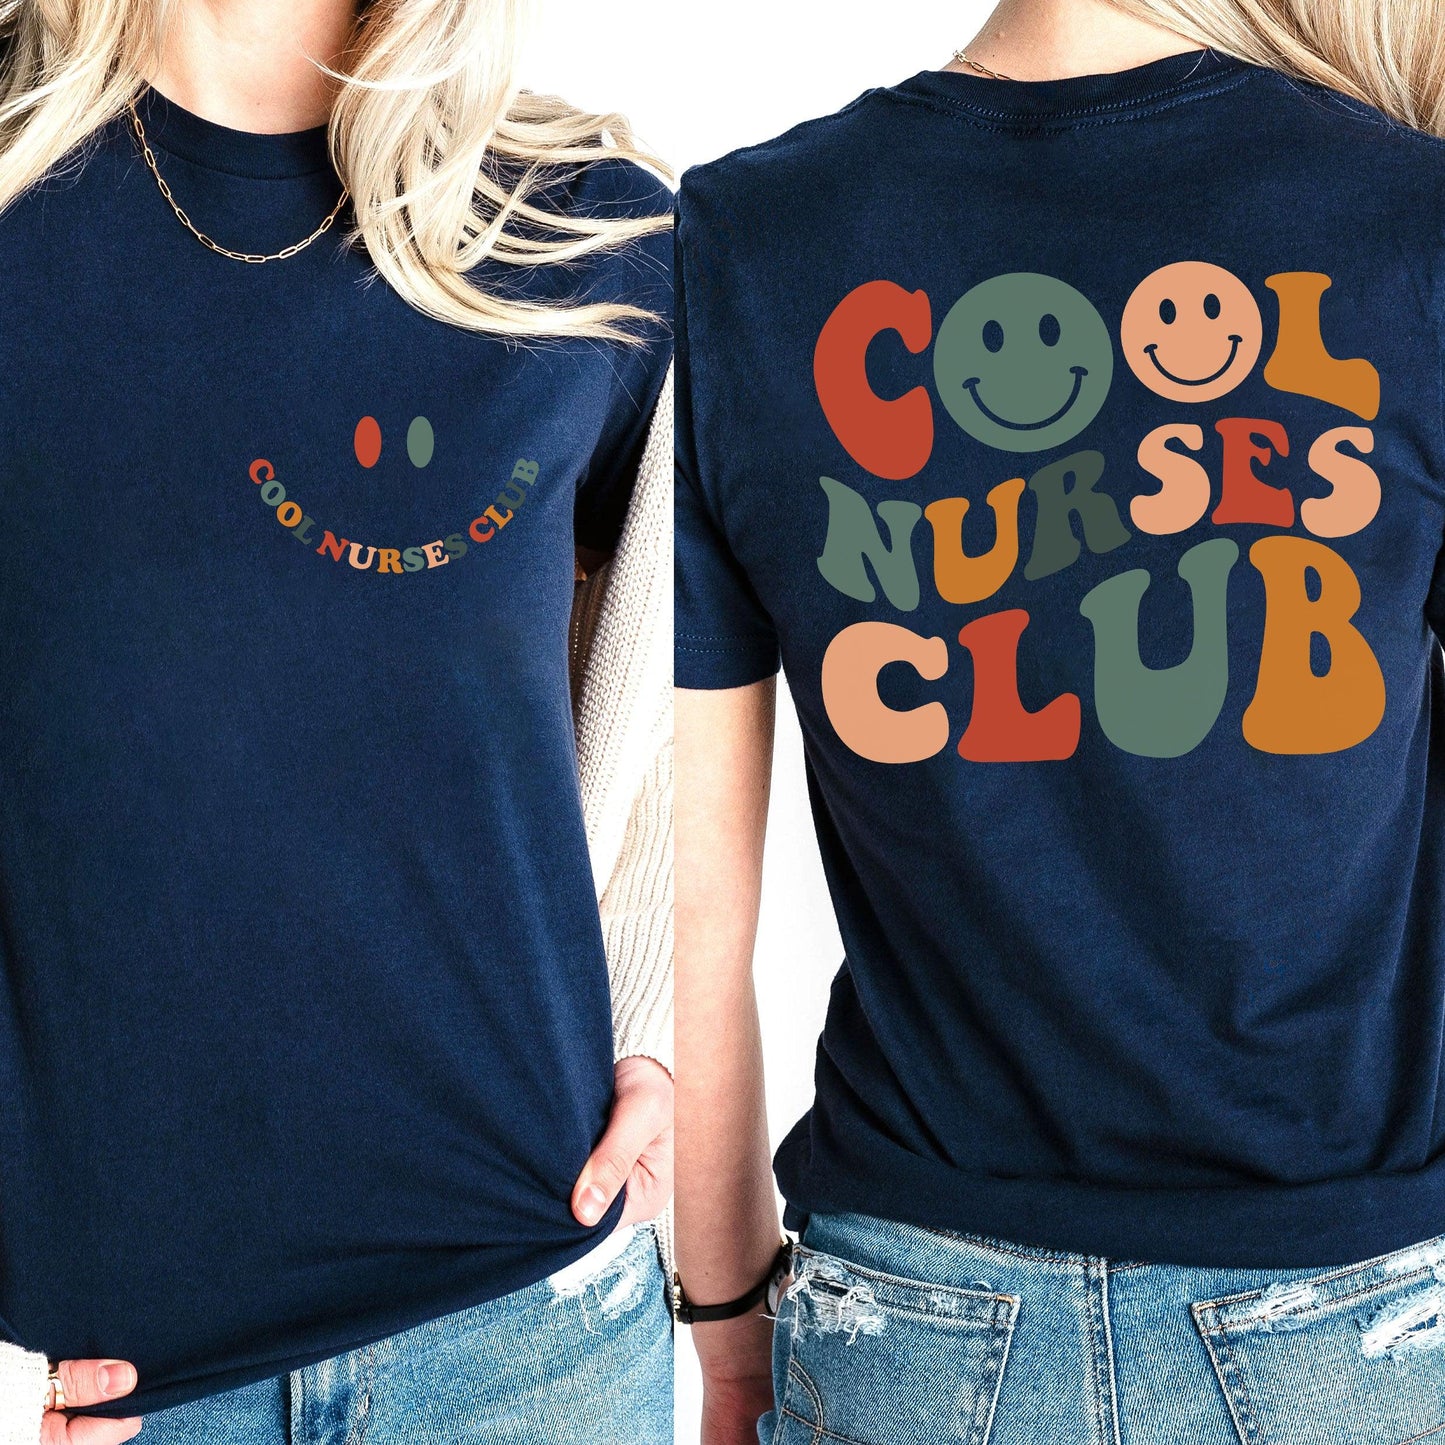 Cooles Nurses Club Sweatshirt und Hoodie- Geschenke für Krankenschwestern - GiftHaus